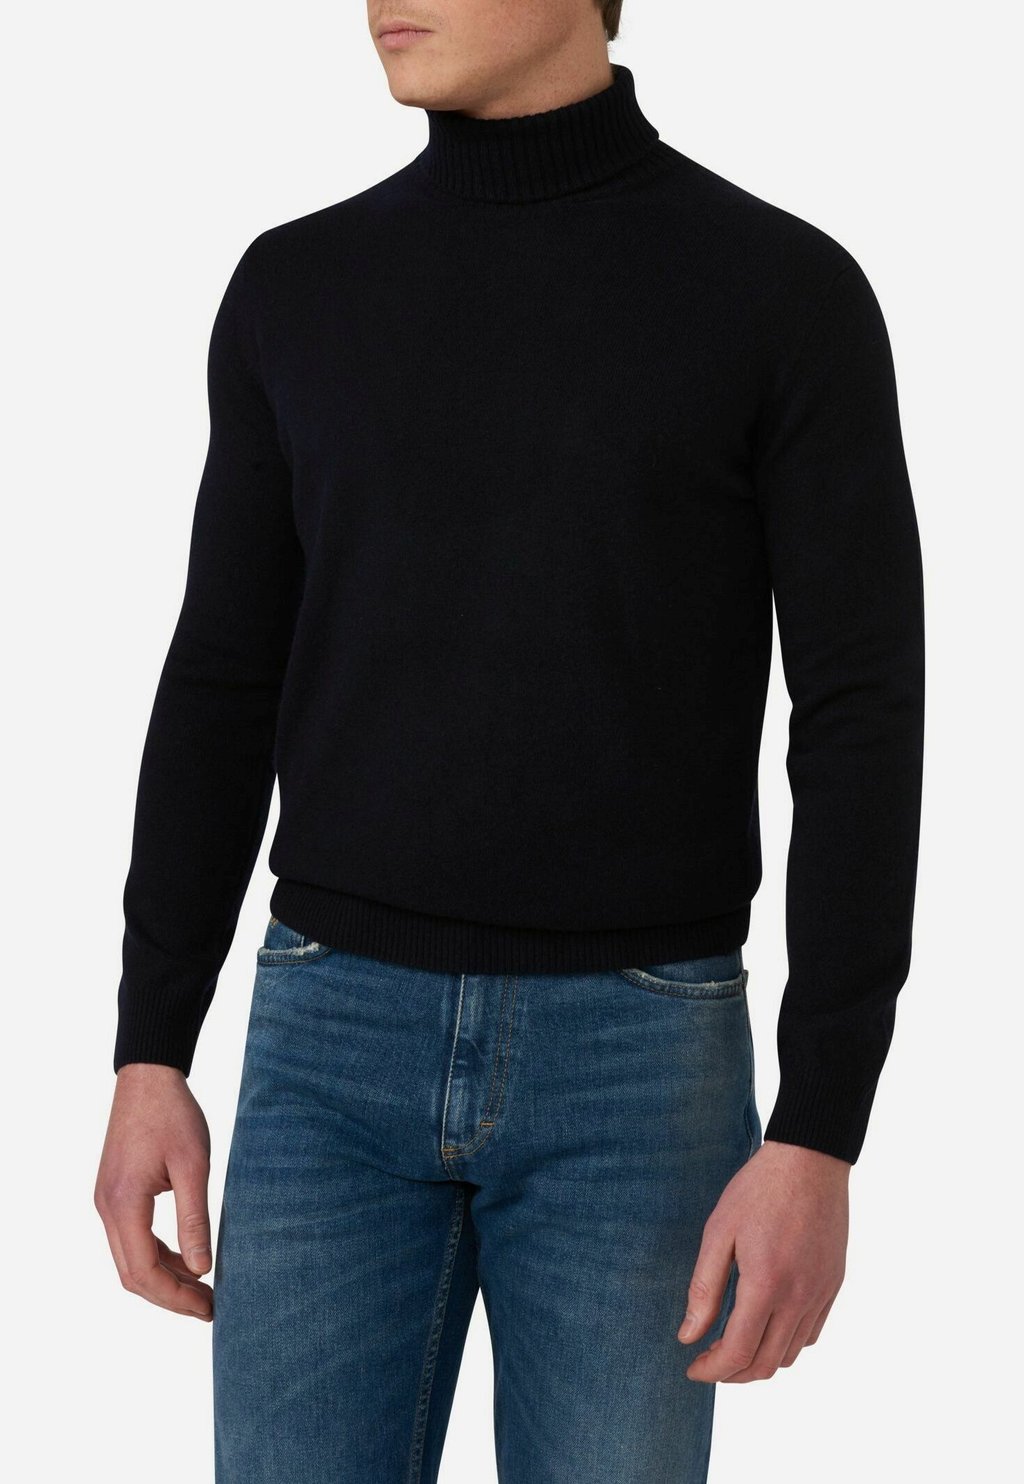 вязаный свитер patton oscar jacobson цвет dark grey Вязаный свитер SALIM ROLLNECK Oscar Jacobson, цвет navy